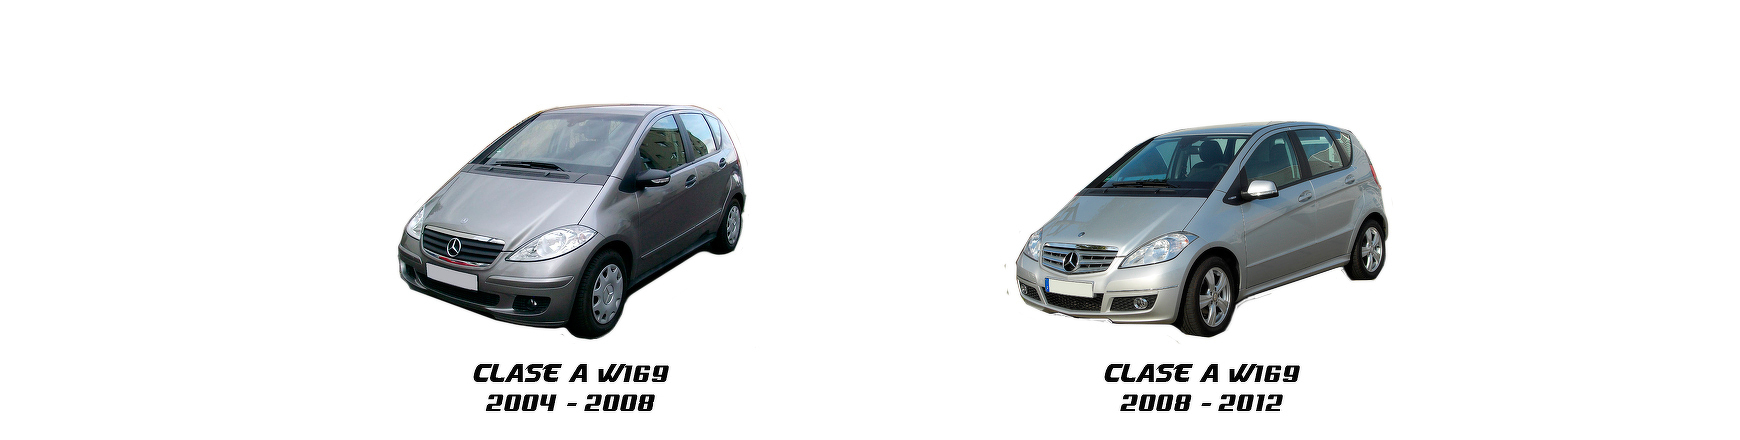 Piezas y Recambios de Mercedes Clase A (W169) de 2004 a 2008 | Veramauto.es